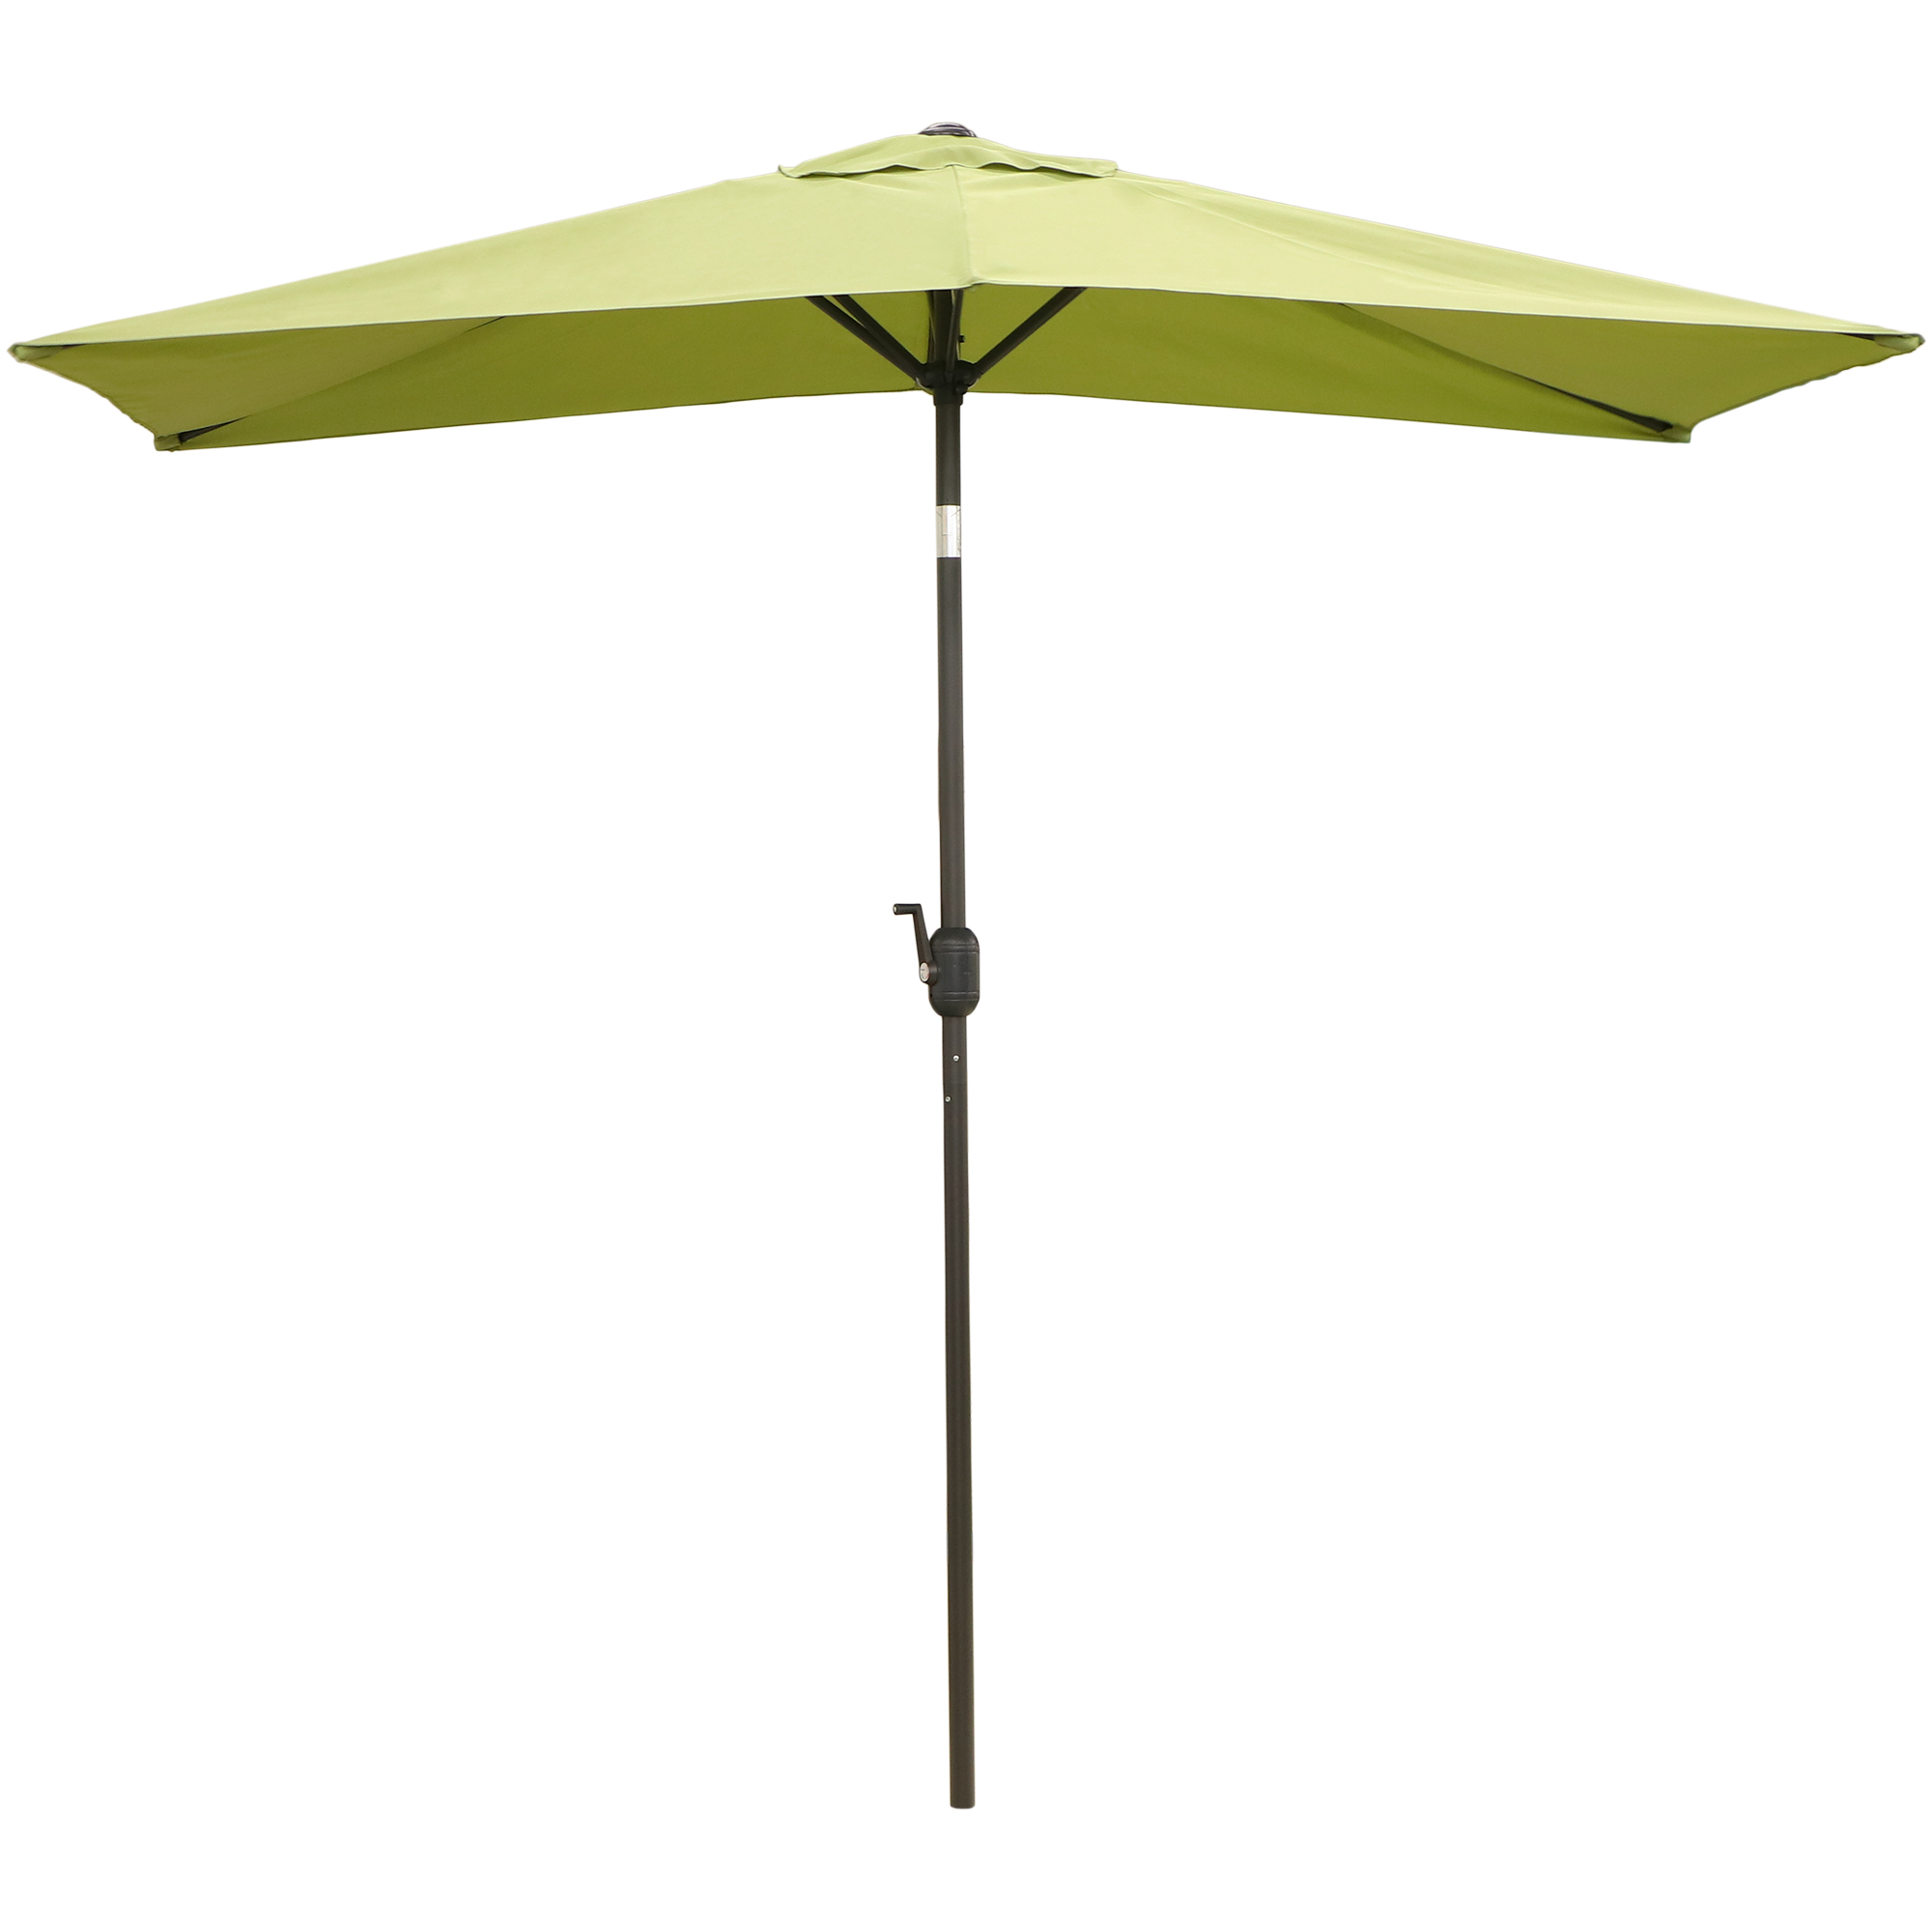 Зонт солнцезащитный Koopman furniture 150x250cm зеленый